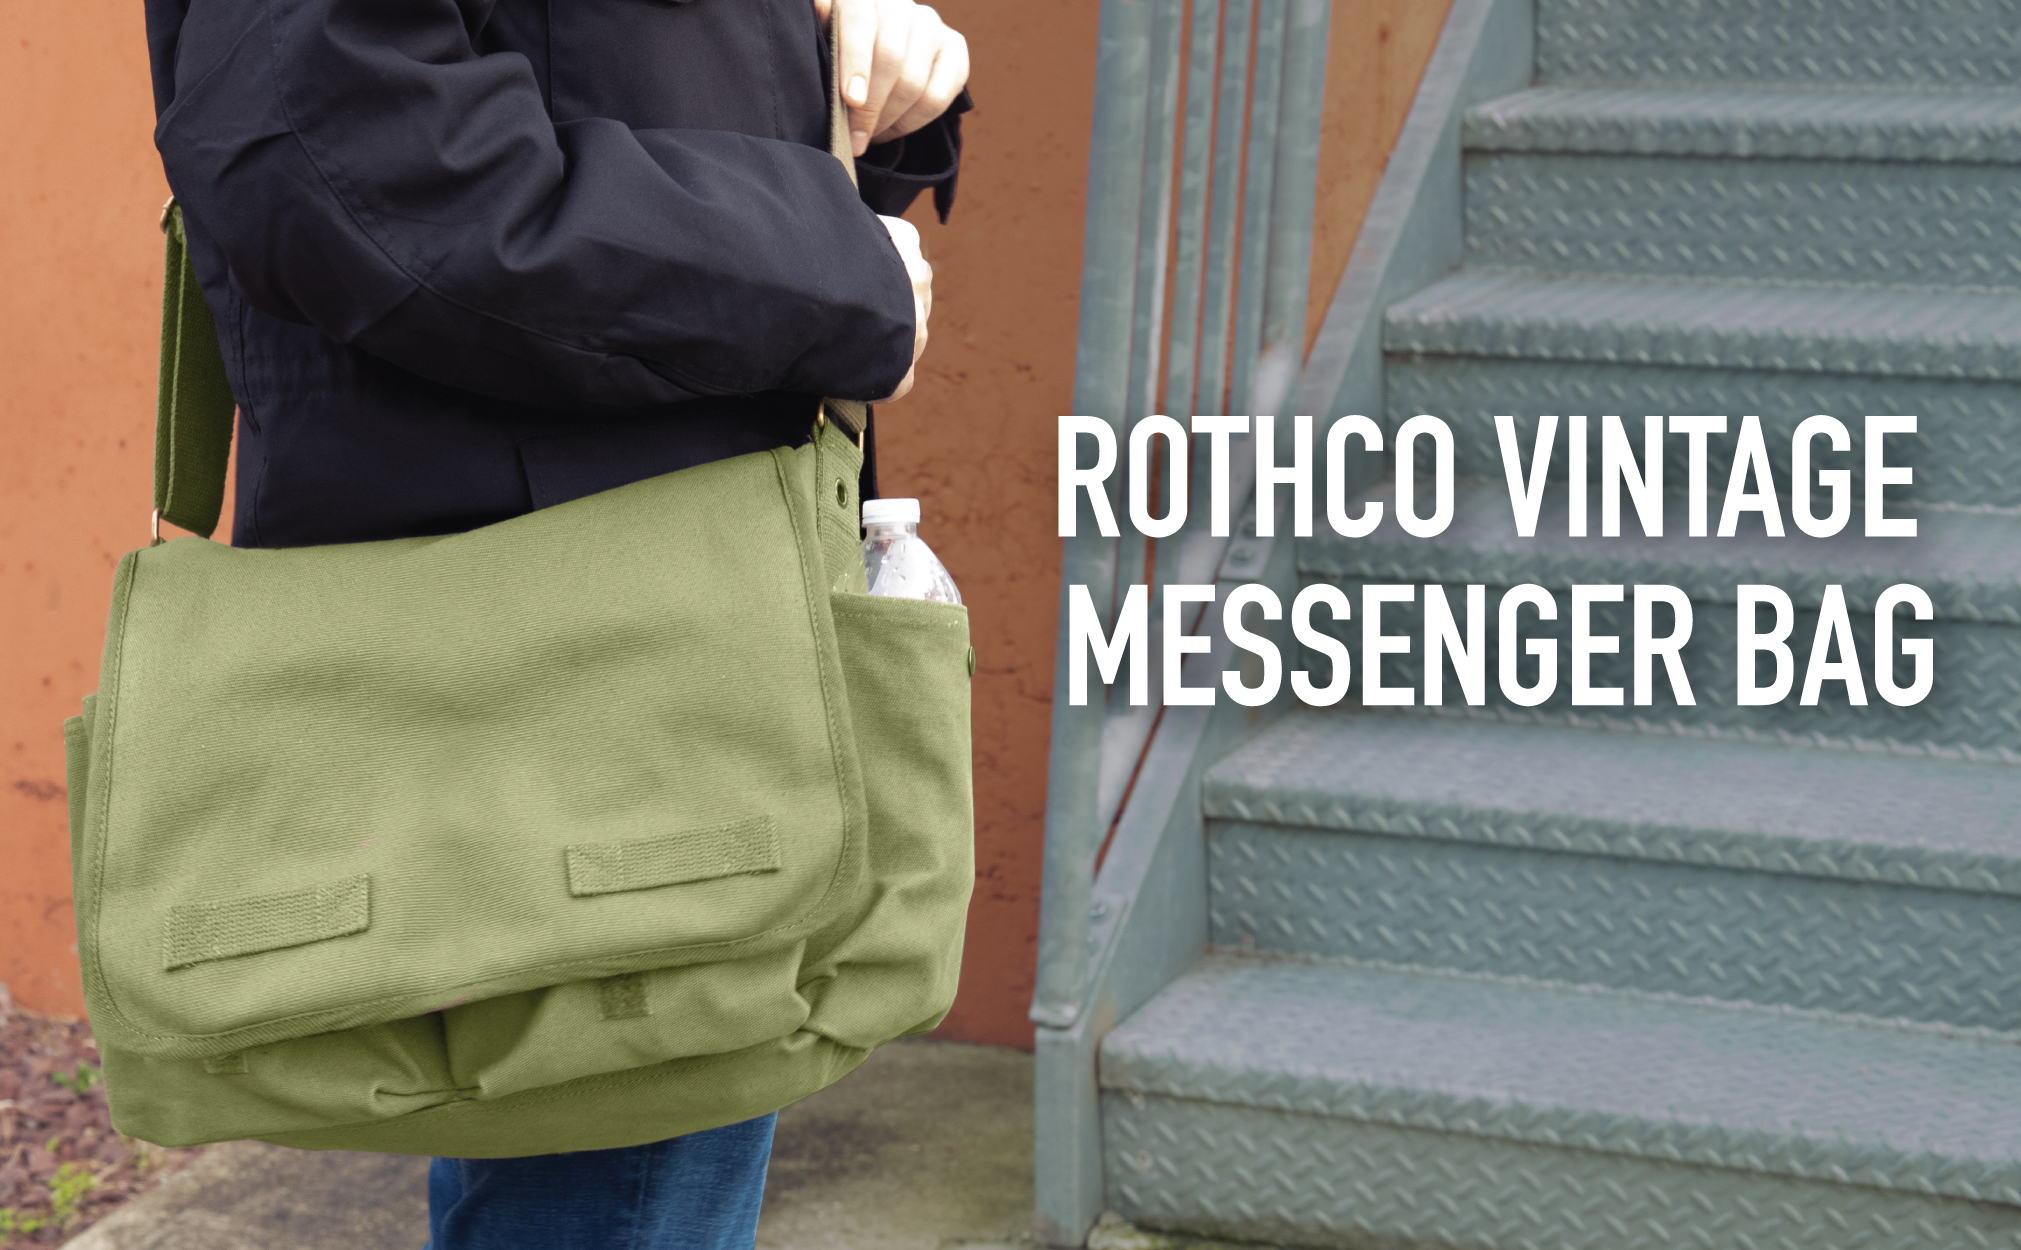 Rothco Classic Canvas Messenger Bag, Brown - image 3 of 3